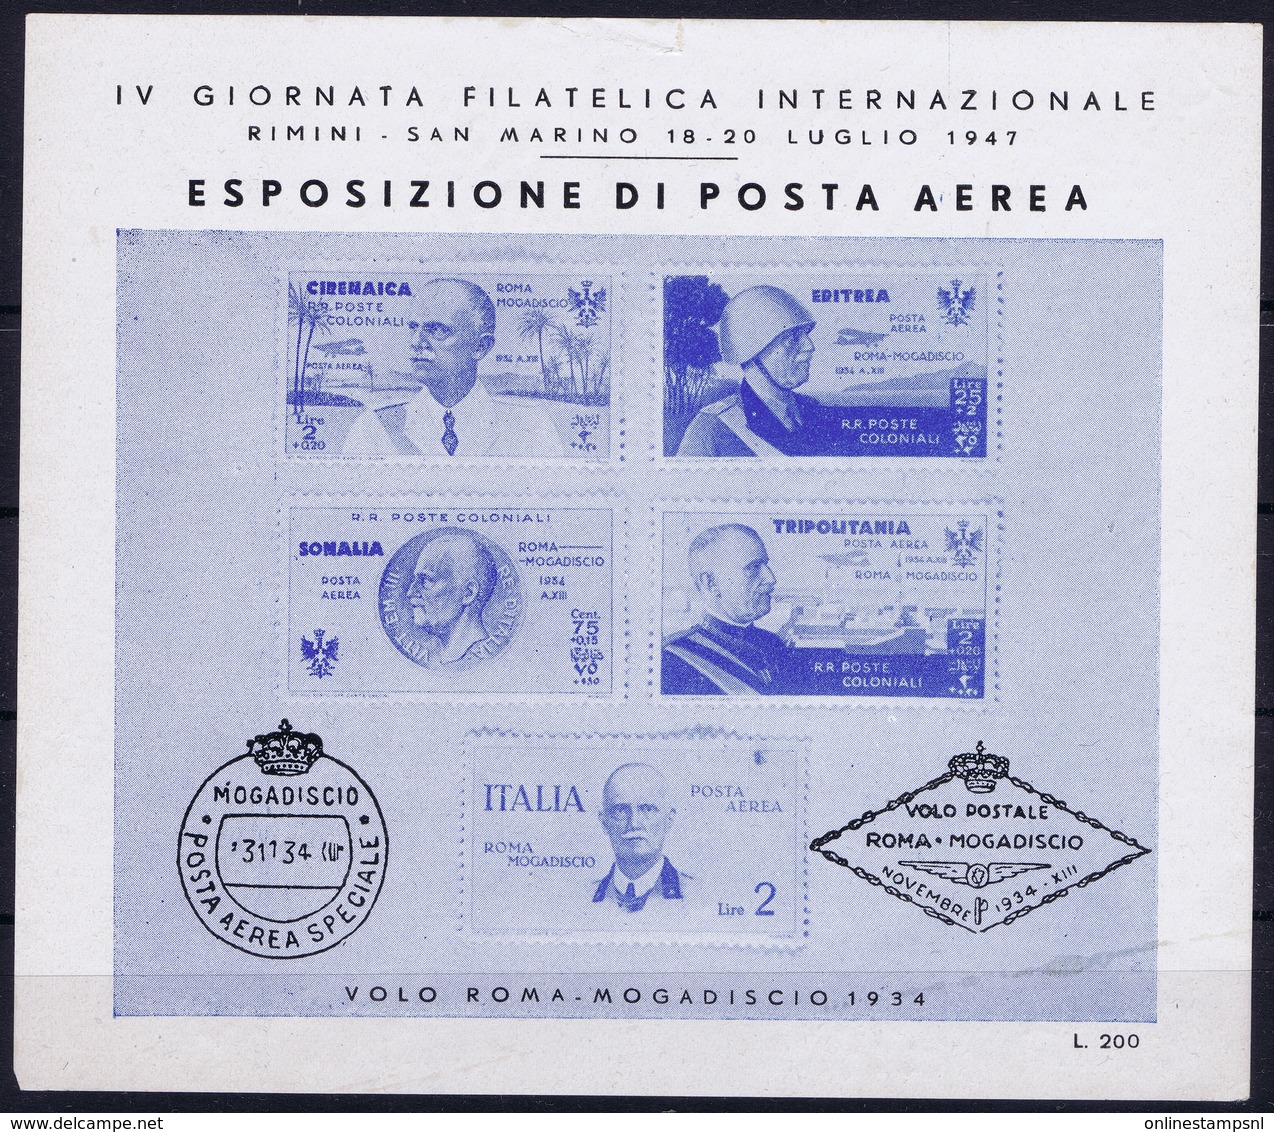 ITALY  ESPOSIZIONE DI POSTA AEREA   IV GIORNATA FILATELICA  VOLO ROMA - MOGADISCIO 1934   RIMINI S. MARINO 1947 - Correo Aéreo